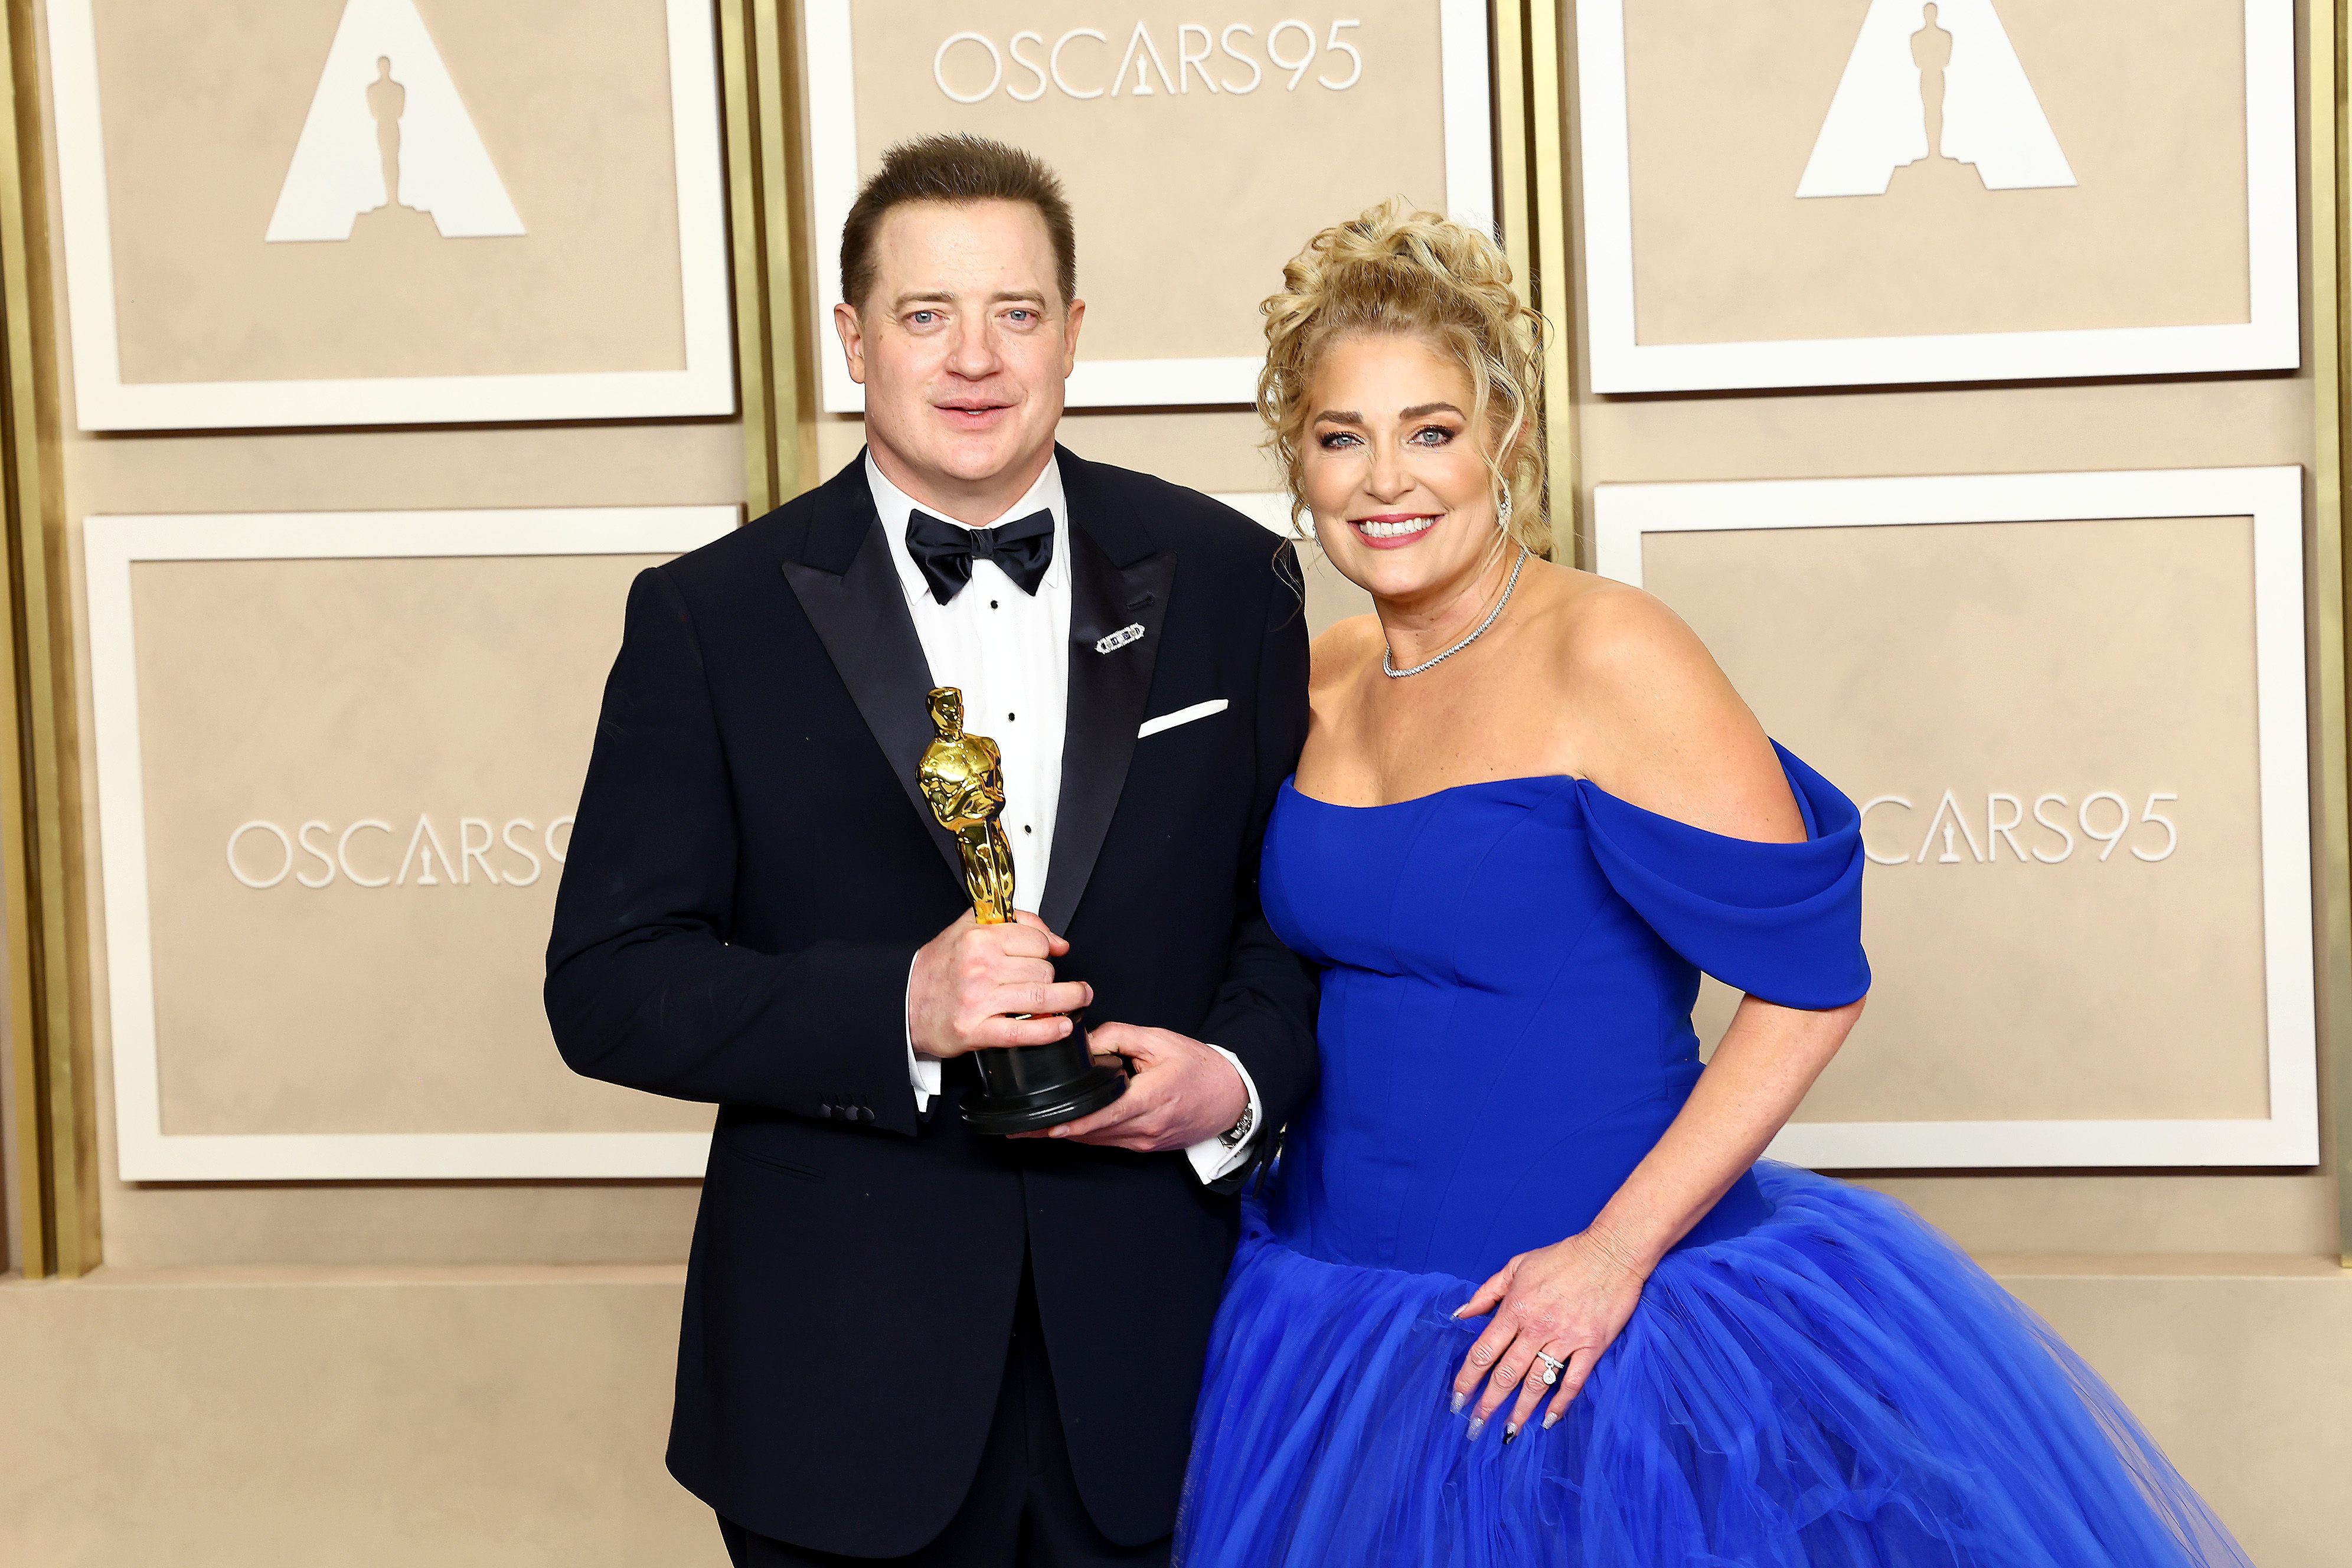 Brendan Fraser, Gewinner des Preises für den besten Hauptdarsteller für "The Whale", und Jeanne Moore posieren im Presseraum während der 95th Annual Academy Awards am 12. März 2023 in Hollywood, Kalifornien. | Quelle: Getty Images